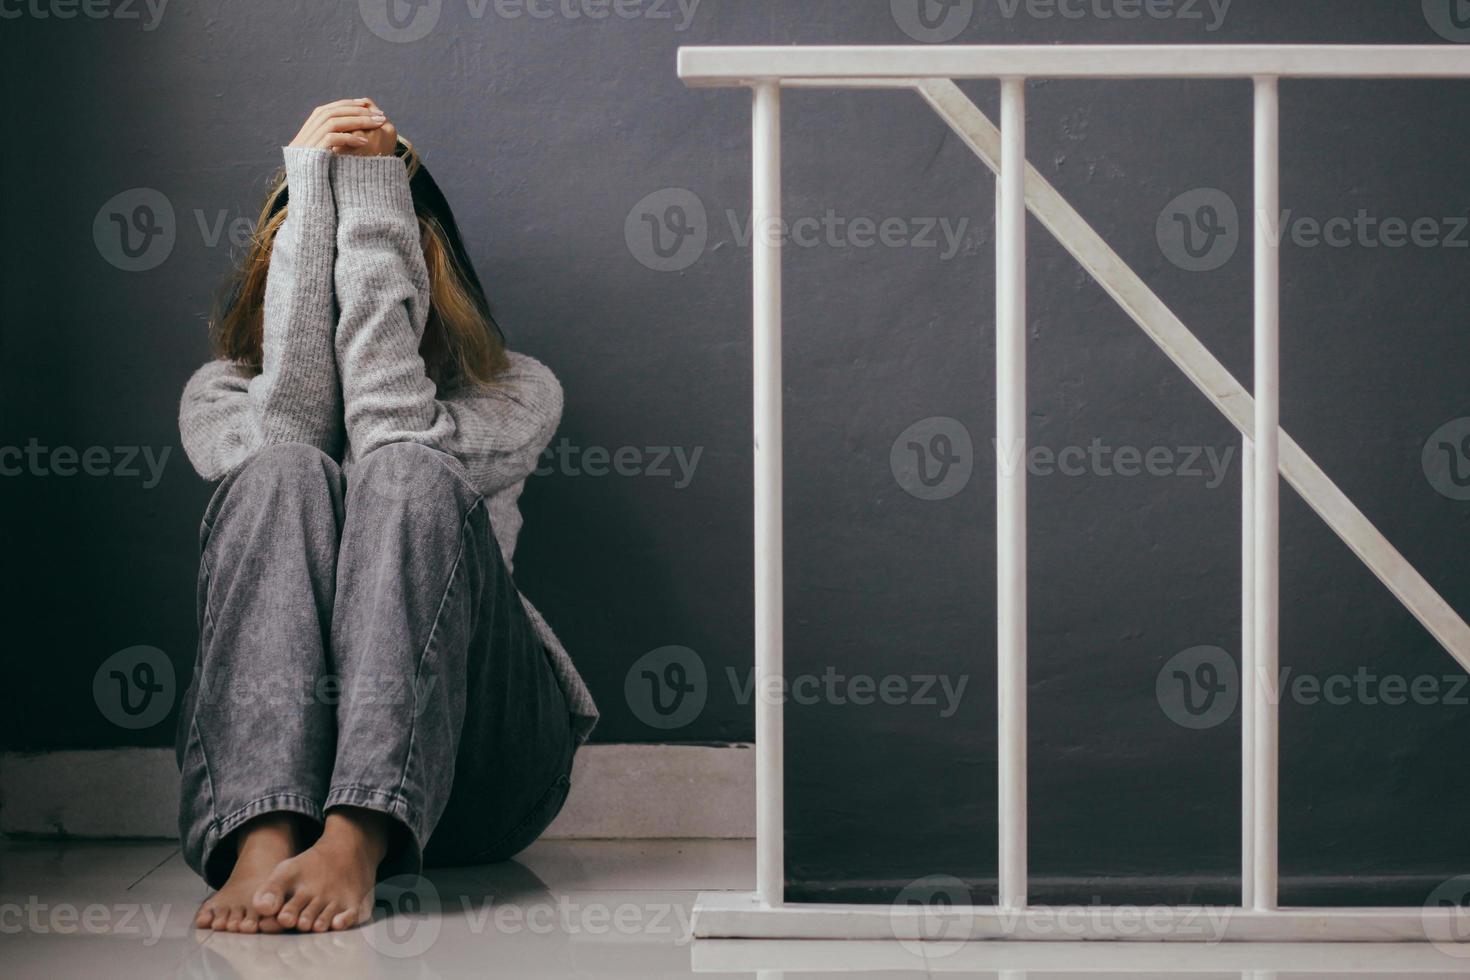 mujer joven deprimida y triste sentada sola en casa foto